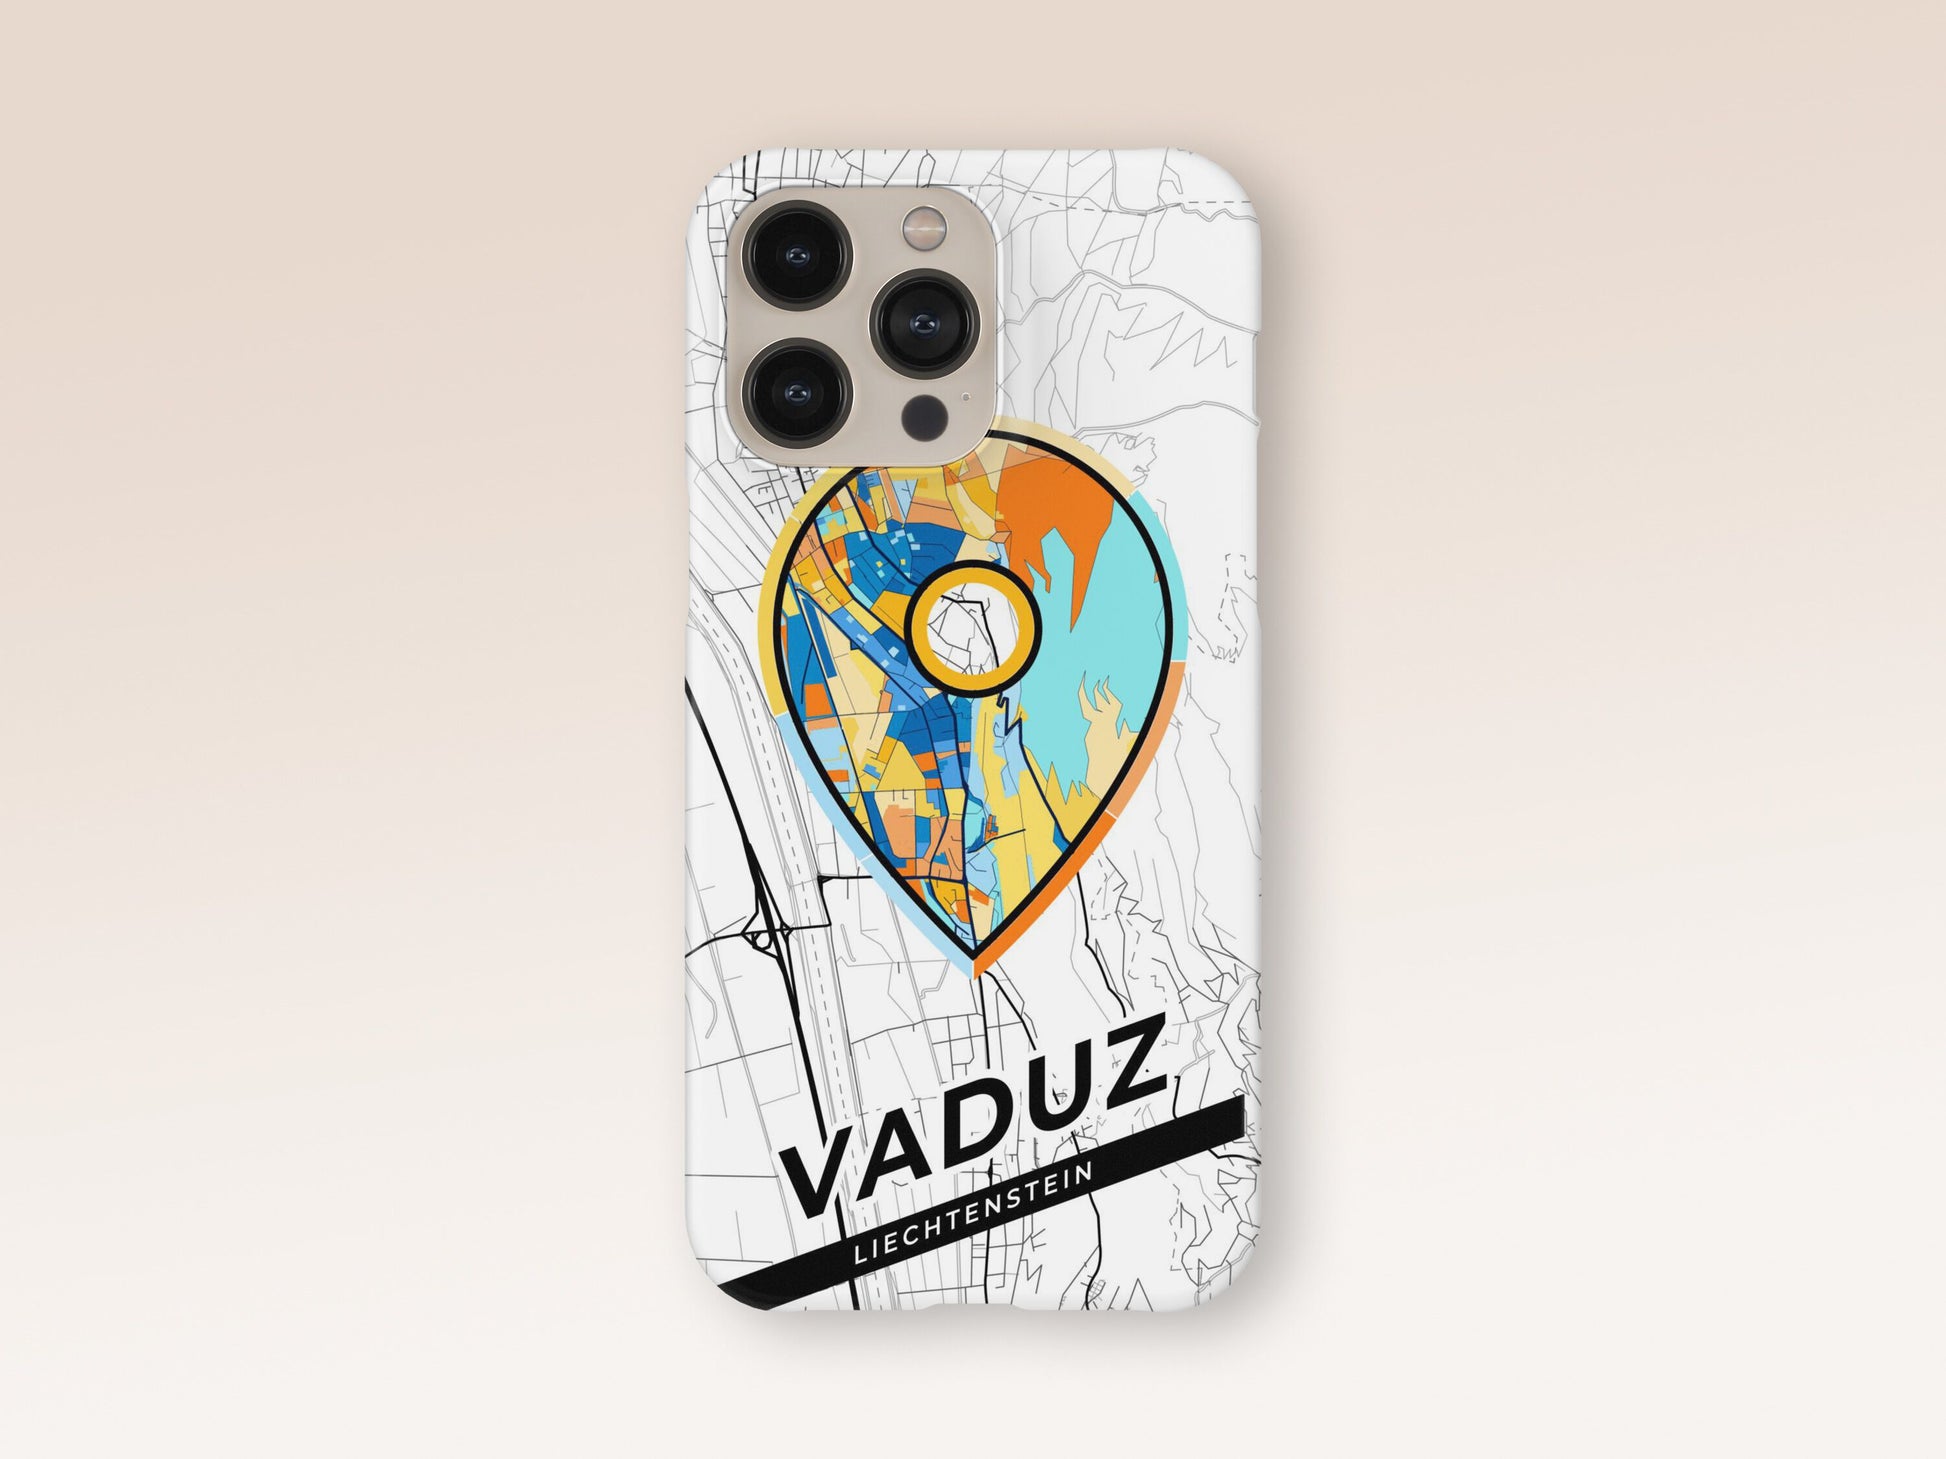 Vaduz Liechtenstein slim phone case with colorful icon 1